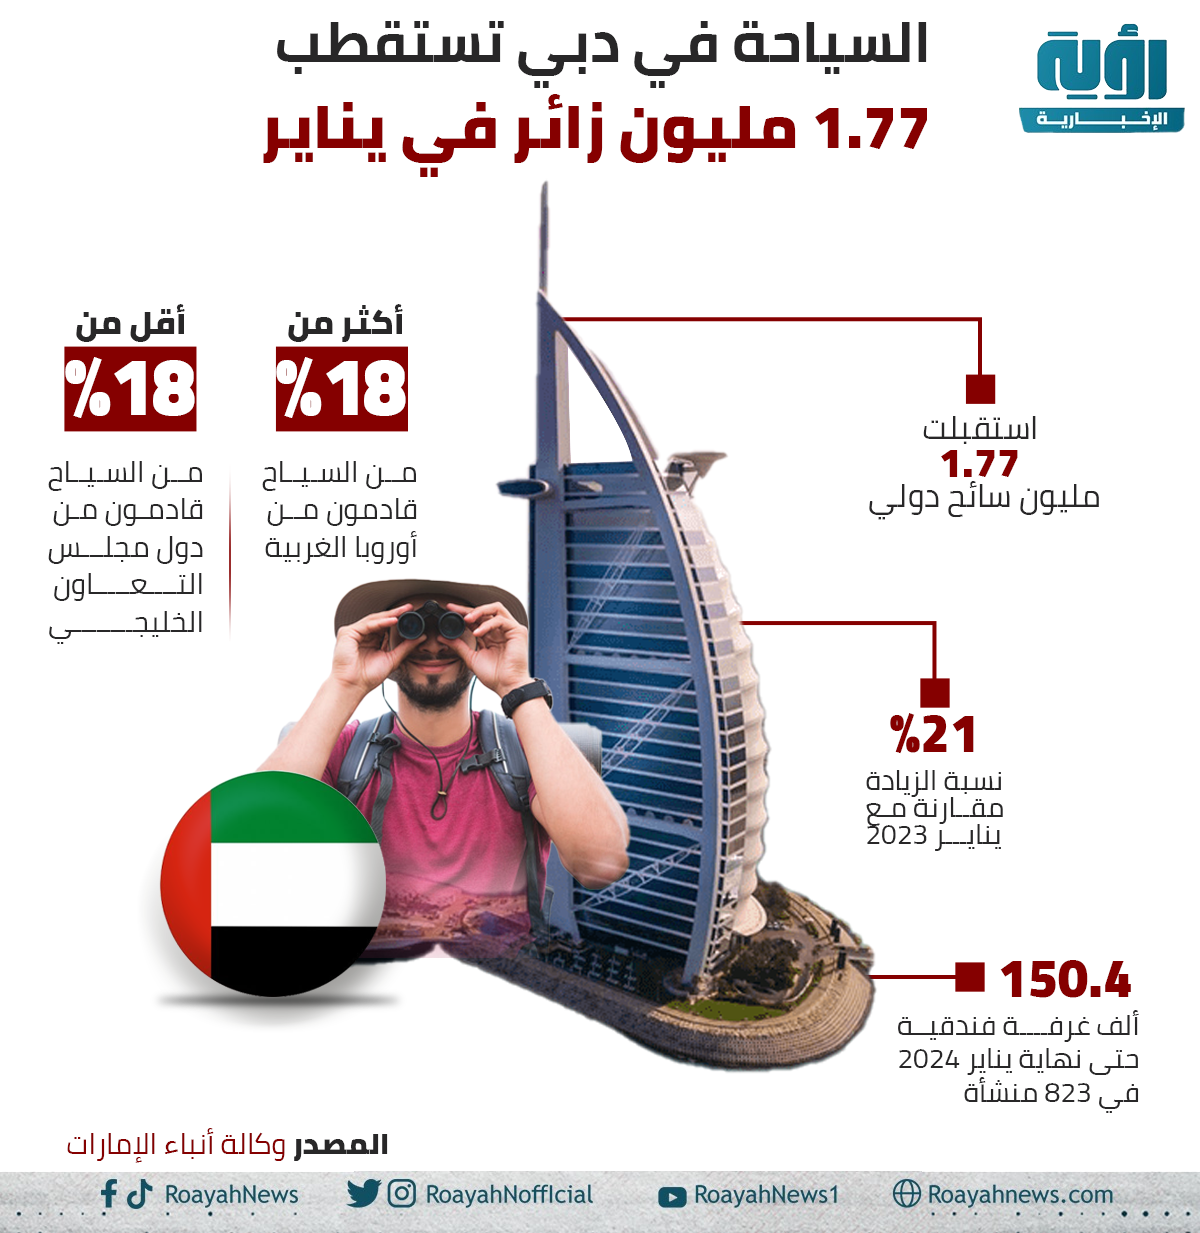 السياحة في دبي تستقطب 1.77 مليون زائر في يناير